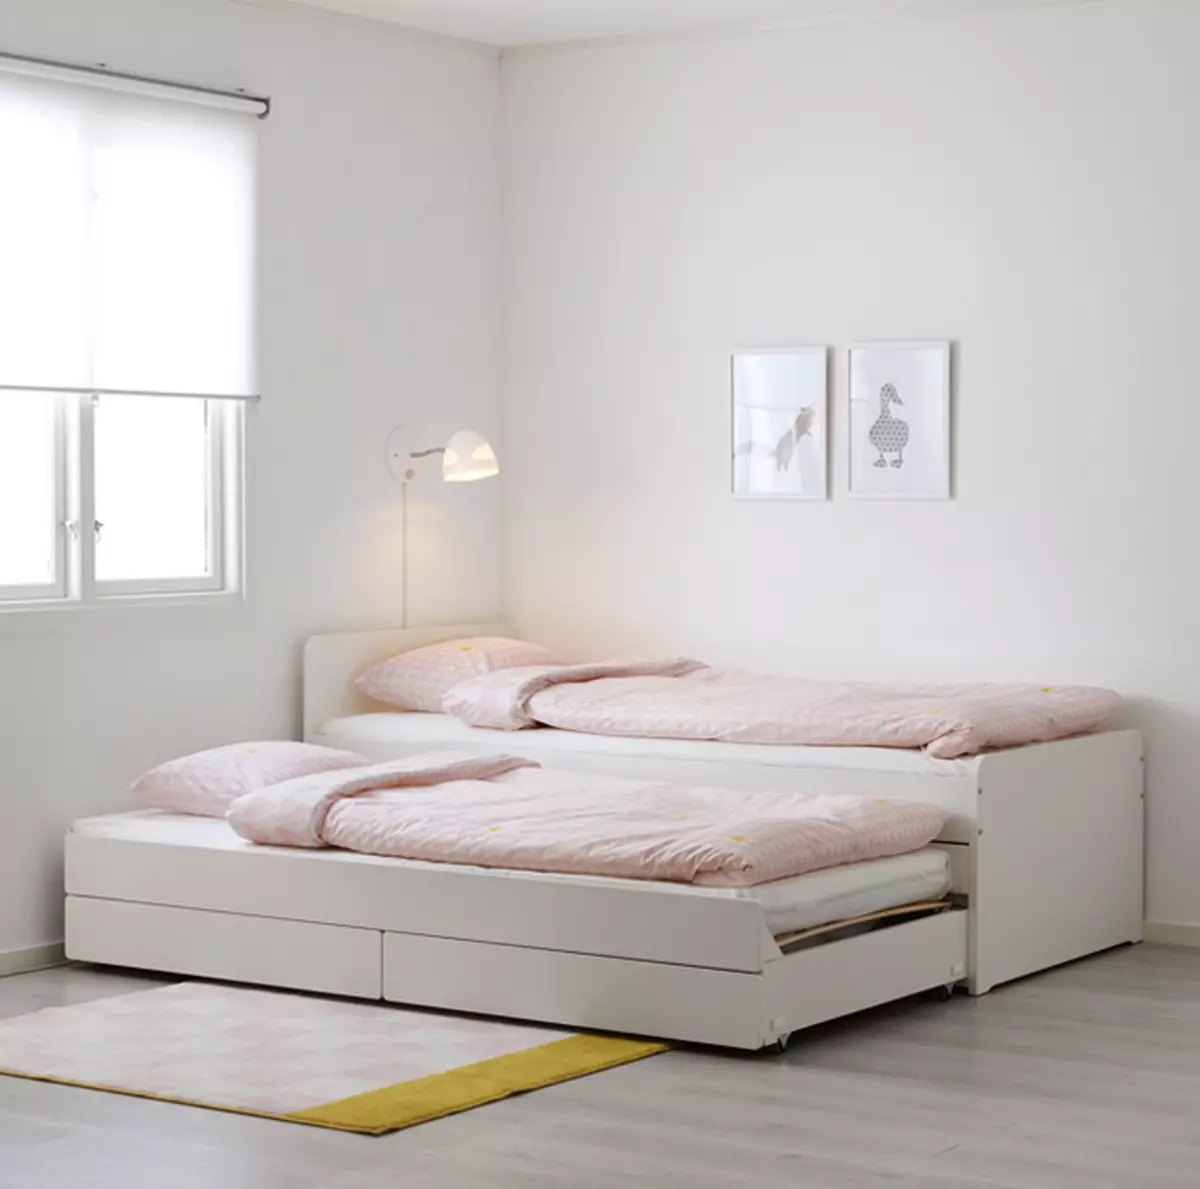 Ferramentando um lugar de dormir em melogabras: 9 melhores camas, sofás e sofás de Ikea 7288_44